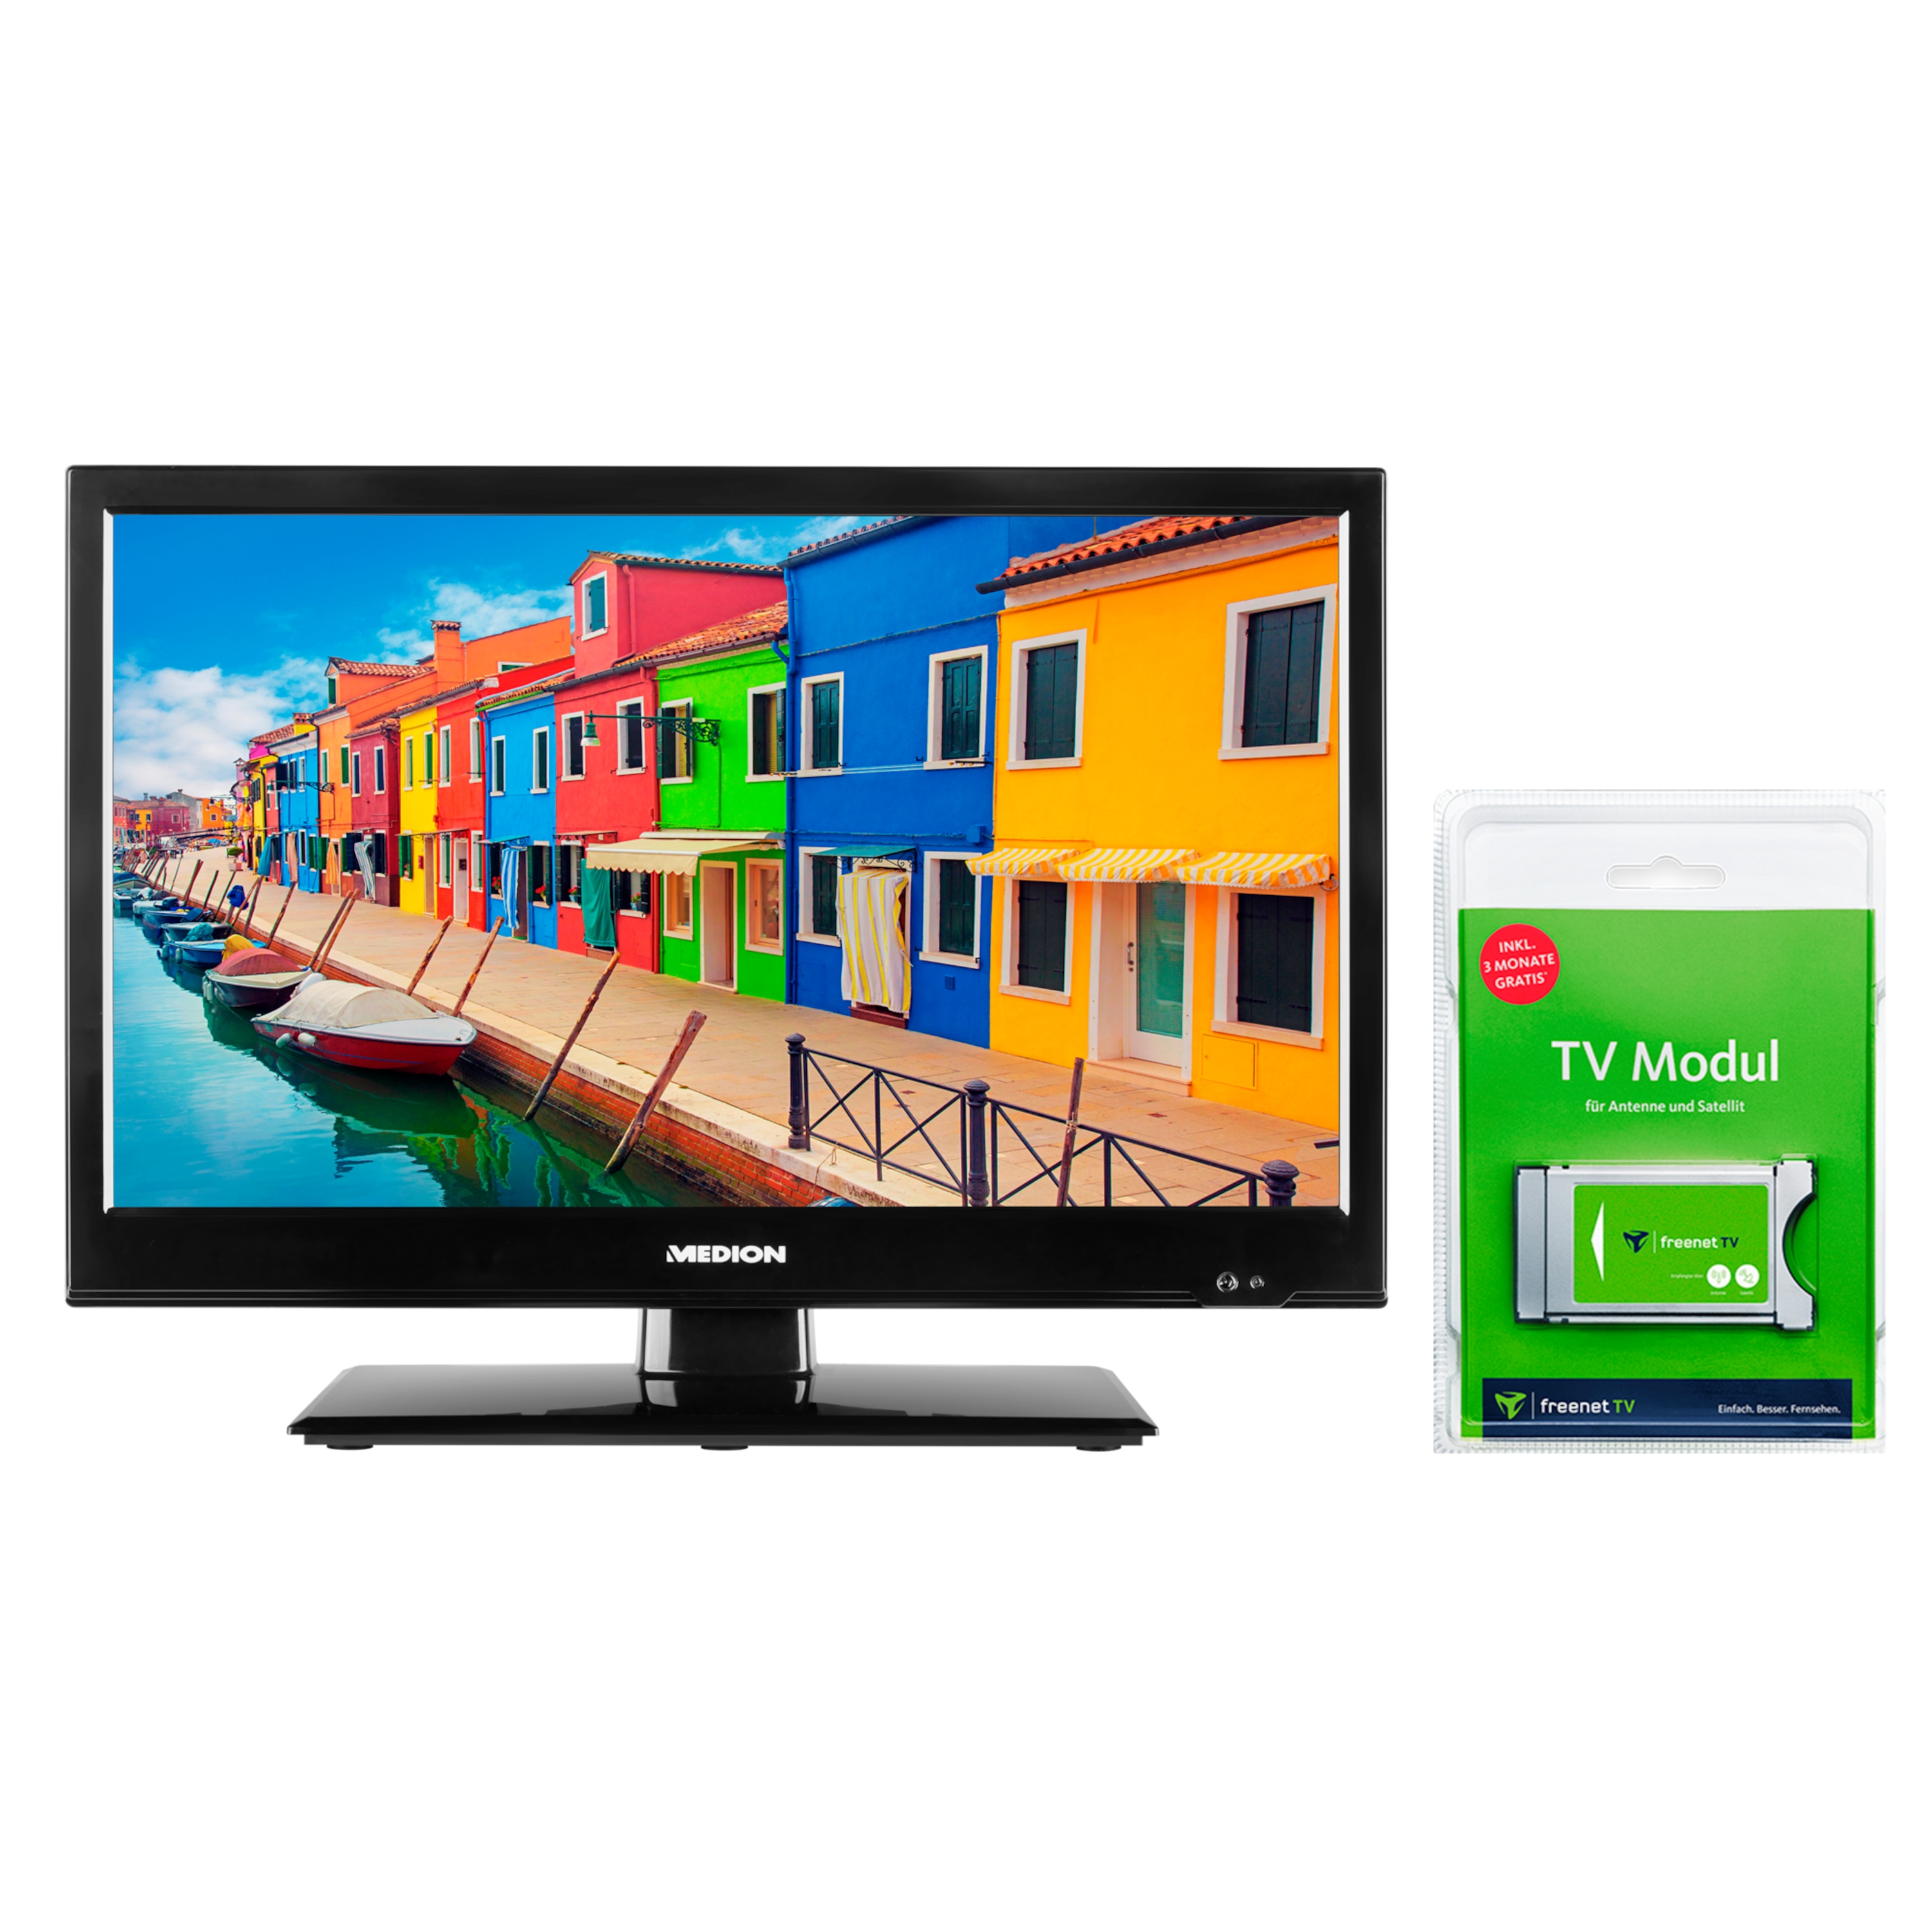 MEDION® LIFE® E11941 Fernseher, 47 cm (18,5'') LCD-TV, inkl. DVB-T 2 HD Modul (3 Monate freenet TV gratis) - ARTIKELSET